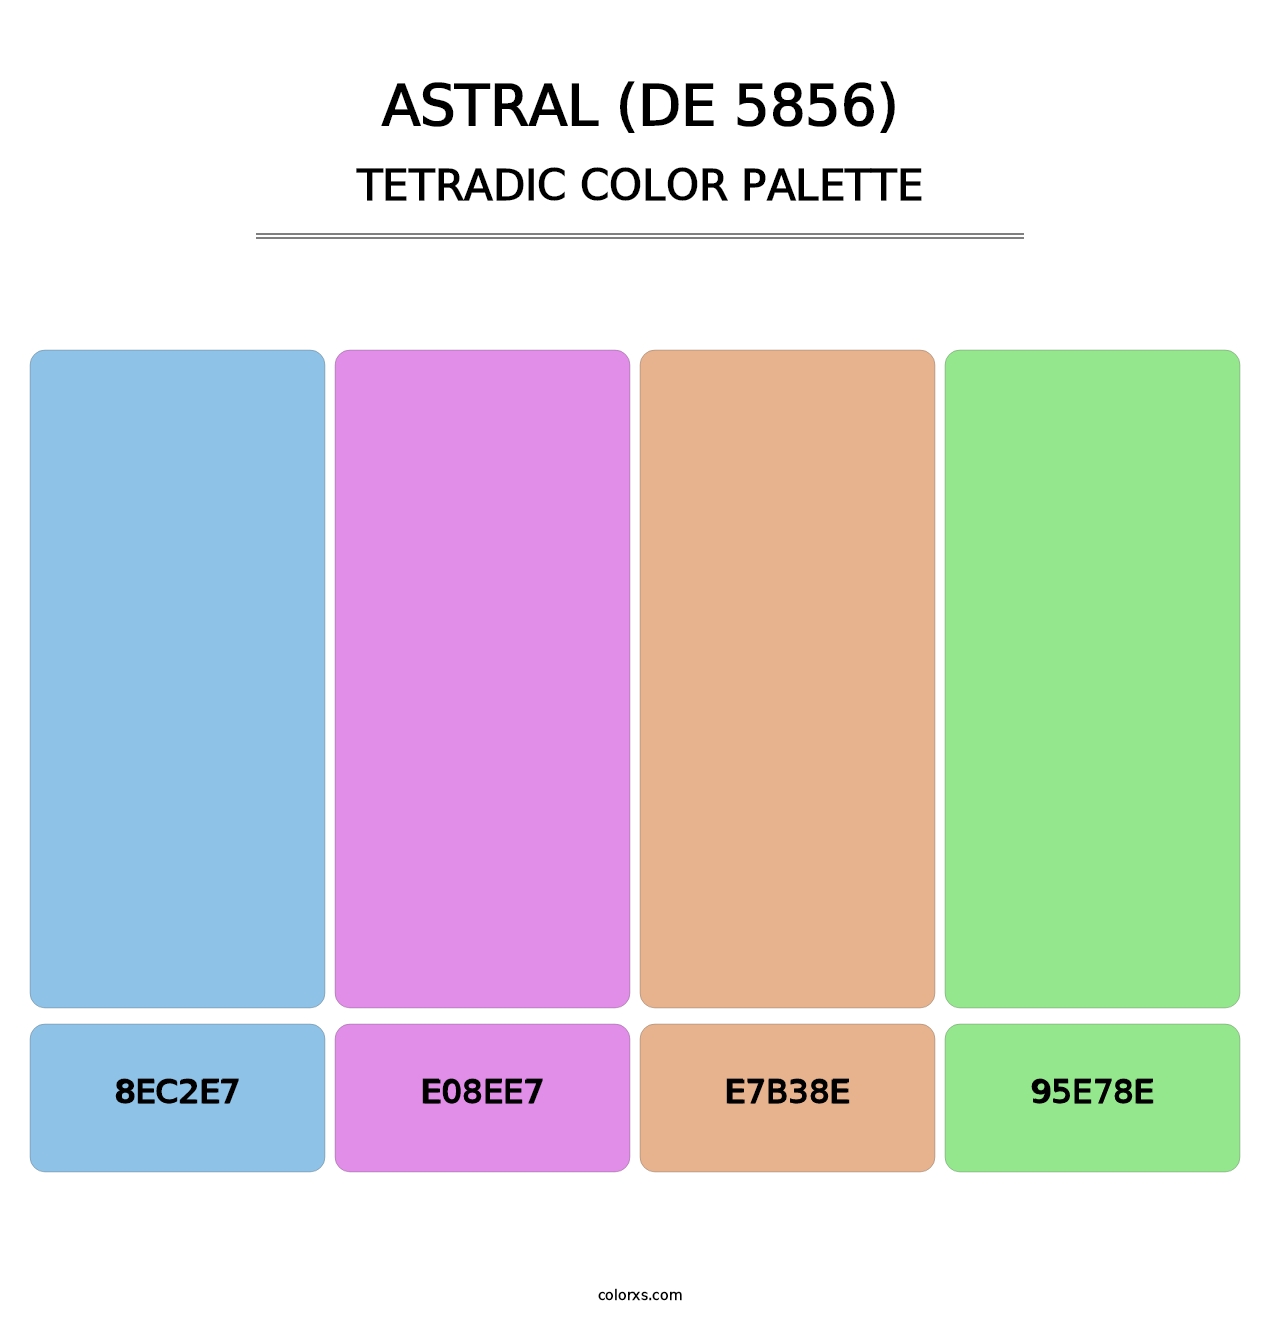 Astral (DE 5856) - Tetradic Color Palette